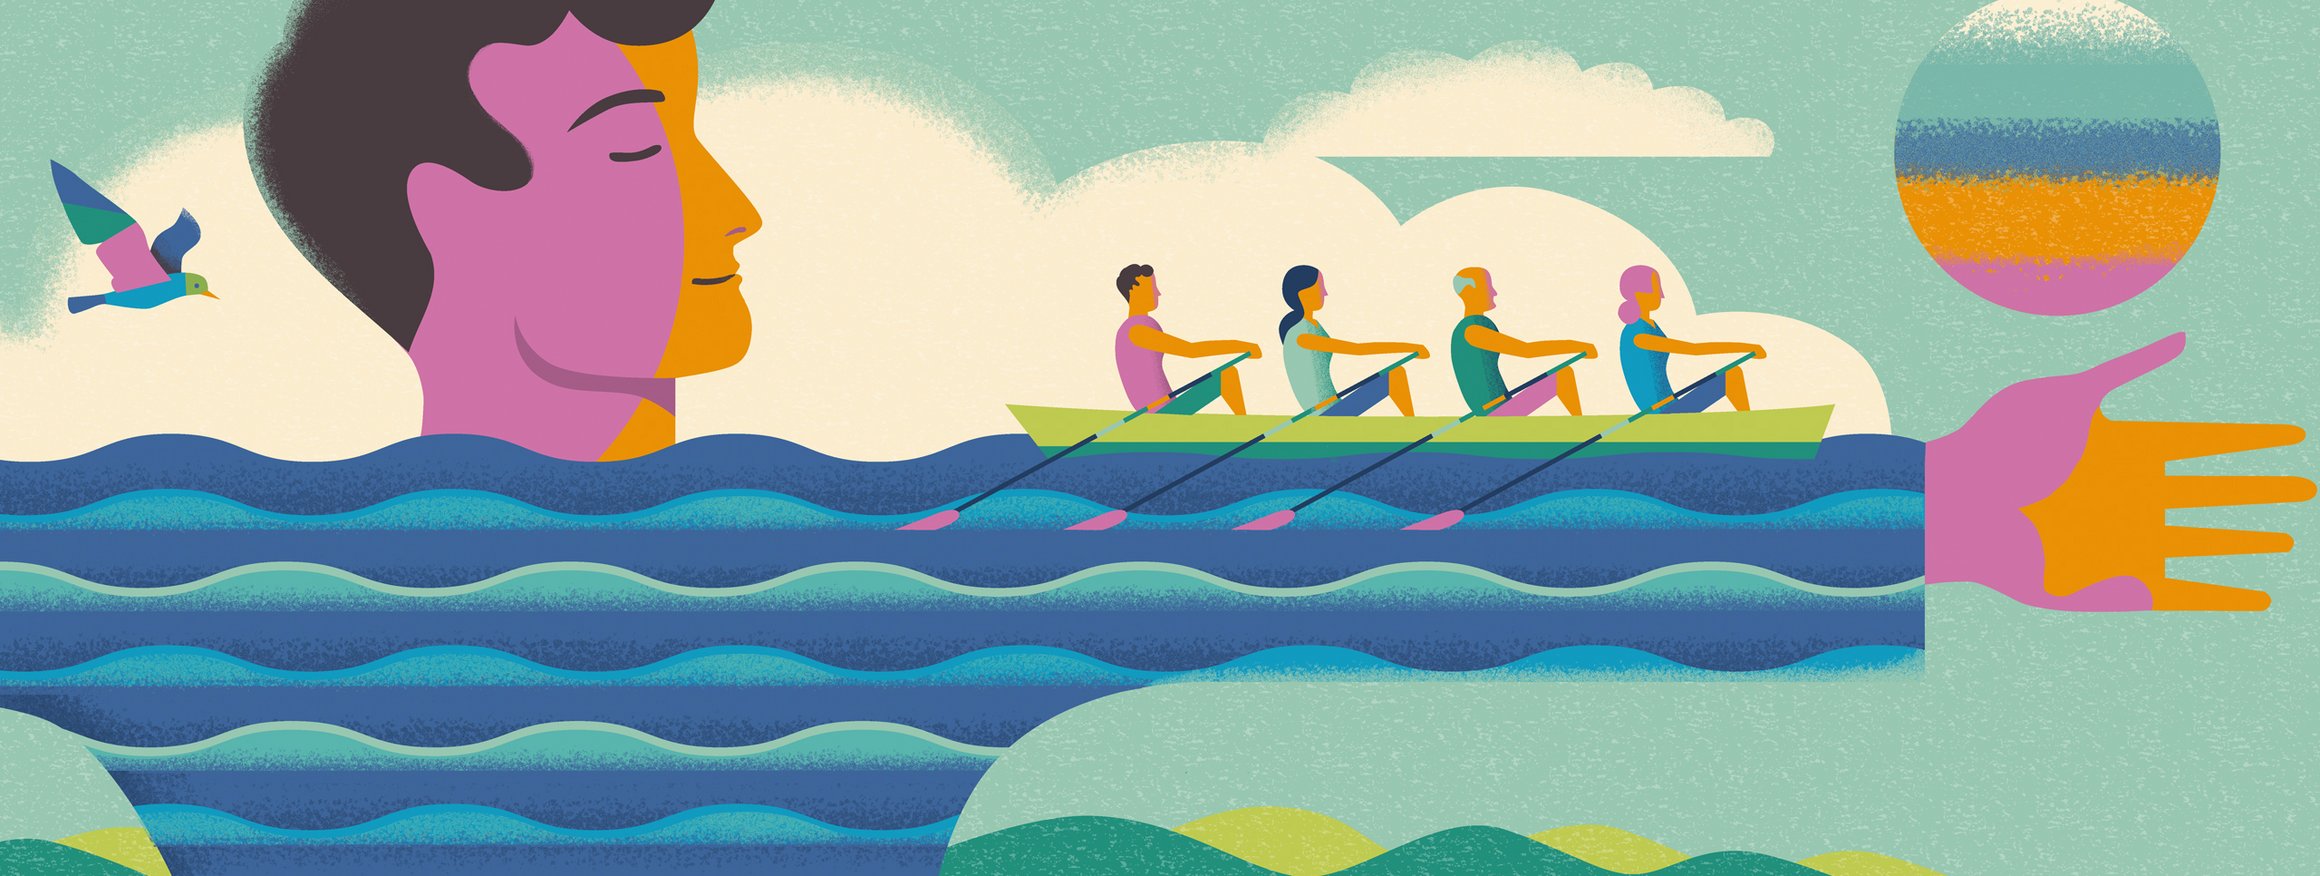 Ein Person streckt seinen Arm aus, der eine Welle darstellt, darauf sind vier Personen auf einem Ruderboot, die davon rudern